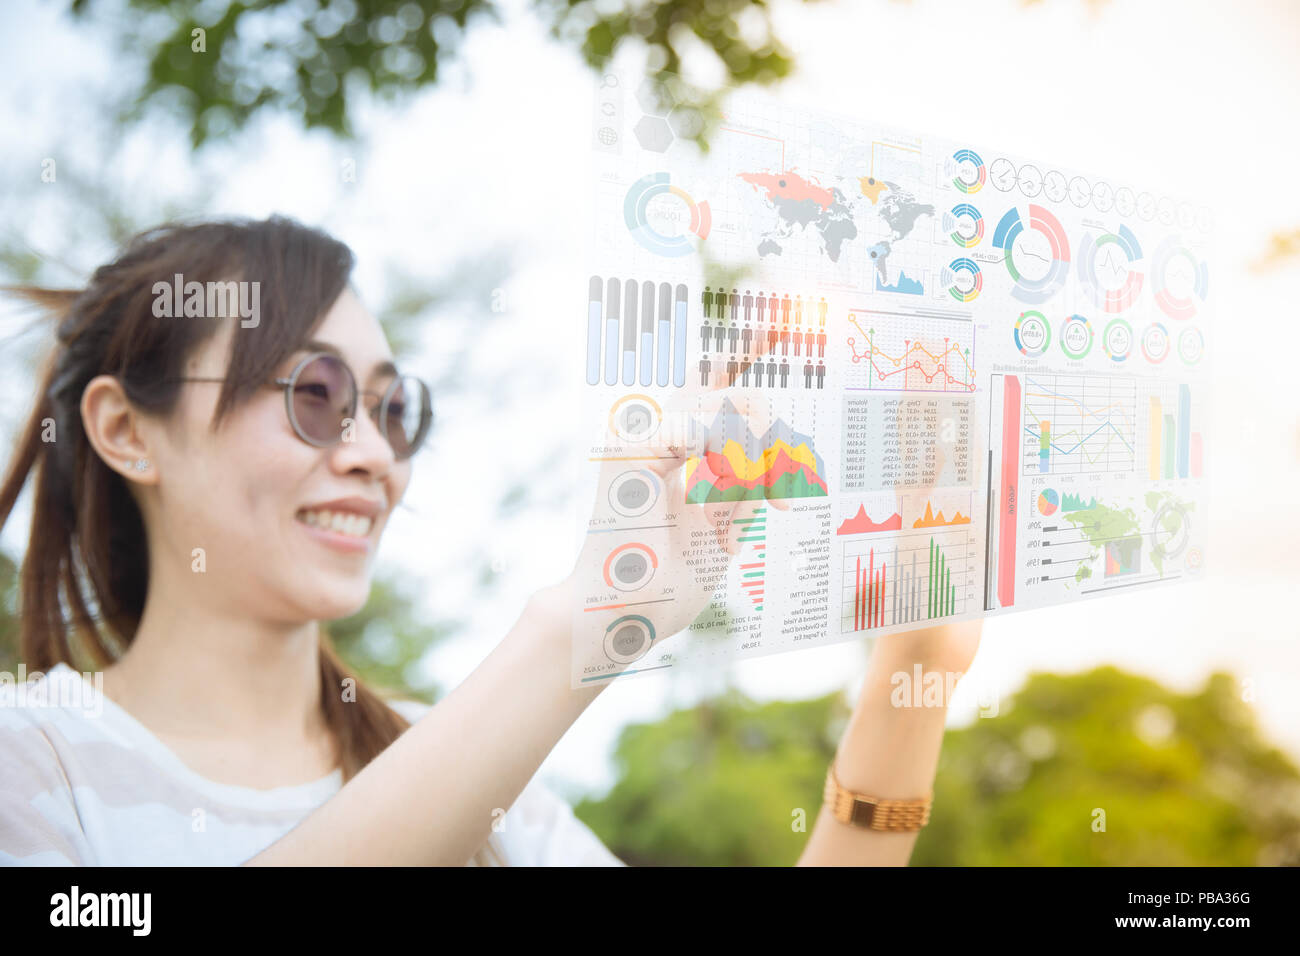 Jeune chinoise asiatique en utilisant l'avance de la technologie de l'hologramme de l'ordinateur écran d'air media mix information d'affaires données graphique outdoor Banque D'Images